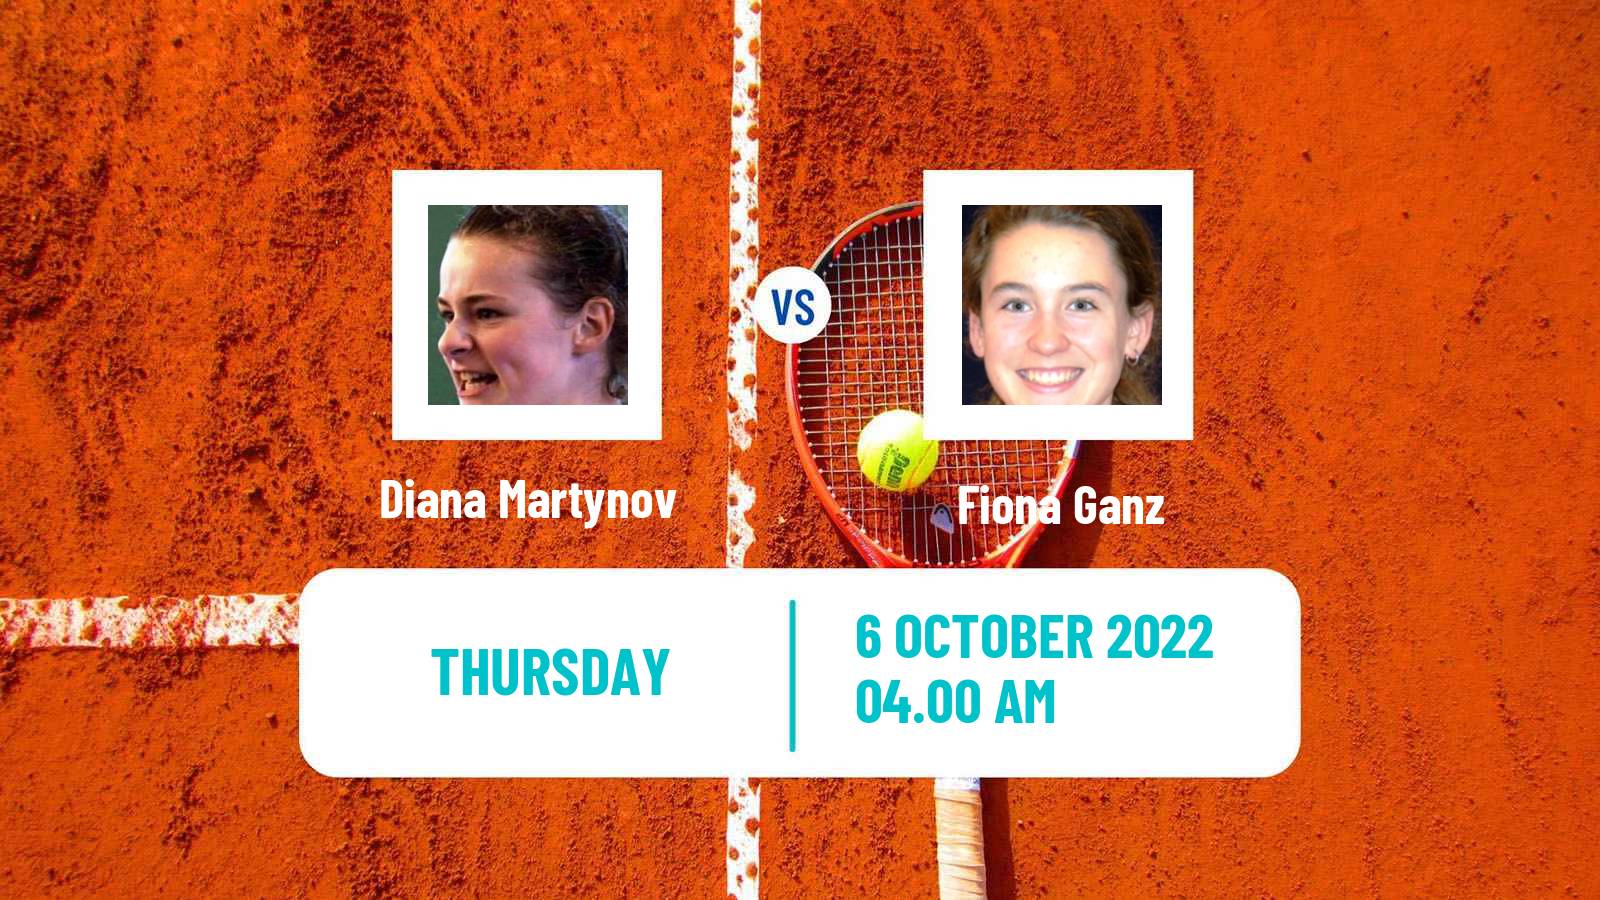 Tennis ITF Tournaments Diana Martynov - Fiona Ganz